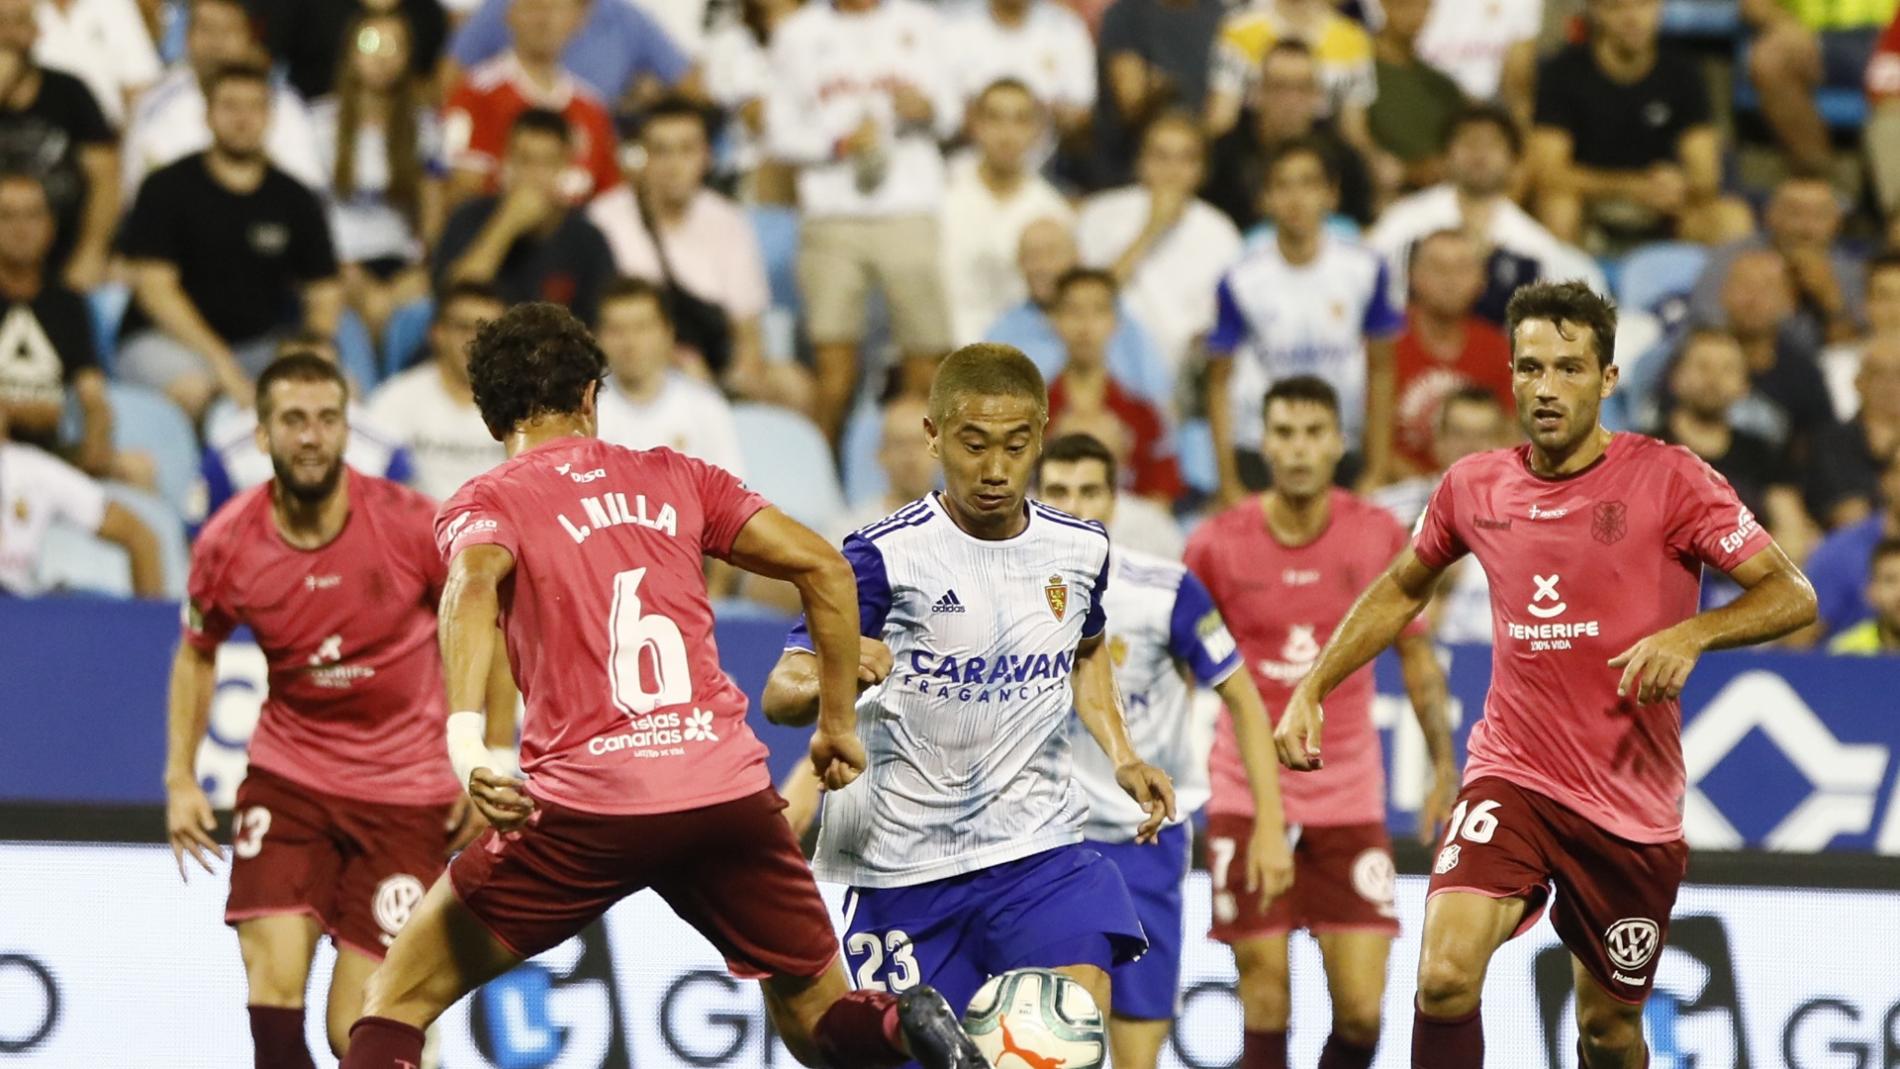 Real Zaragoza – Oviedo: La Romareda quiere volver a ver a su